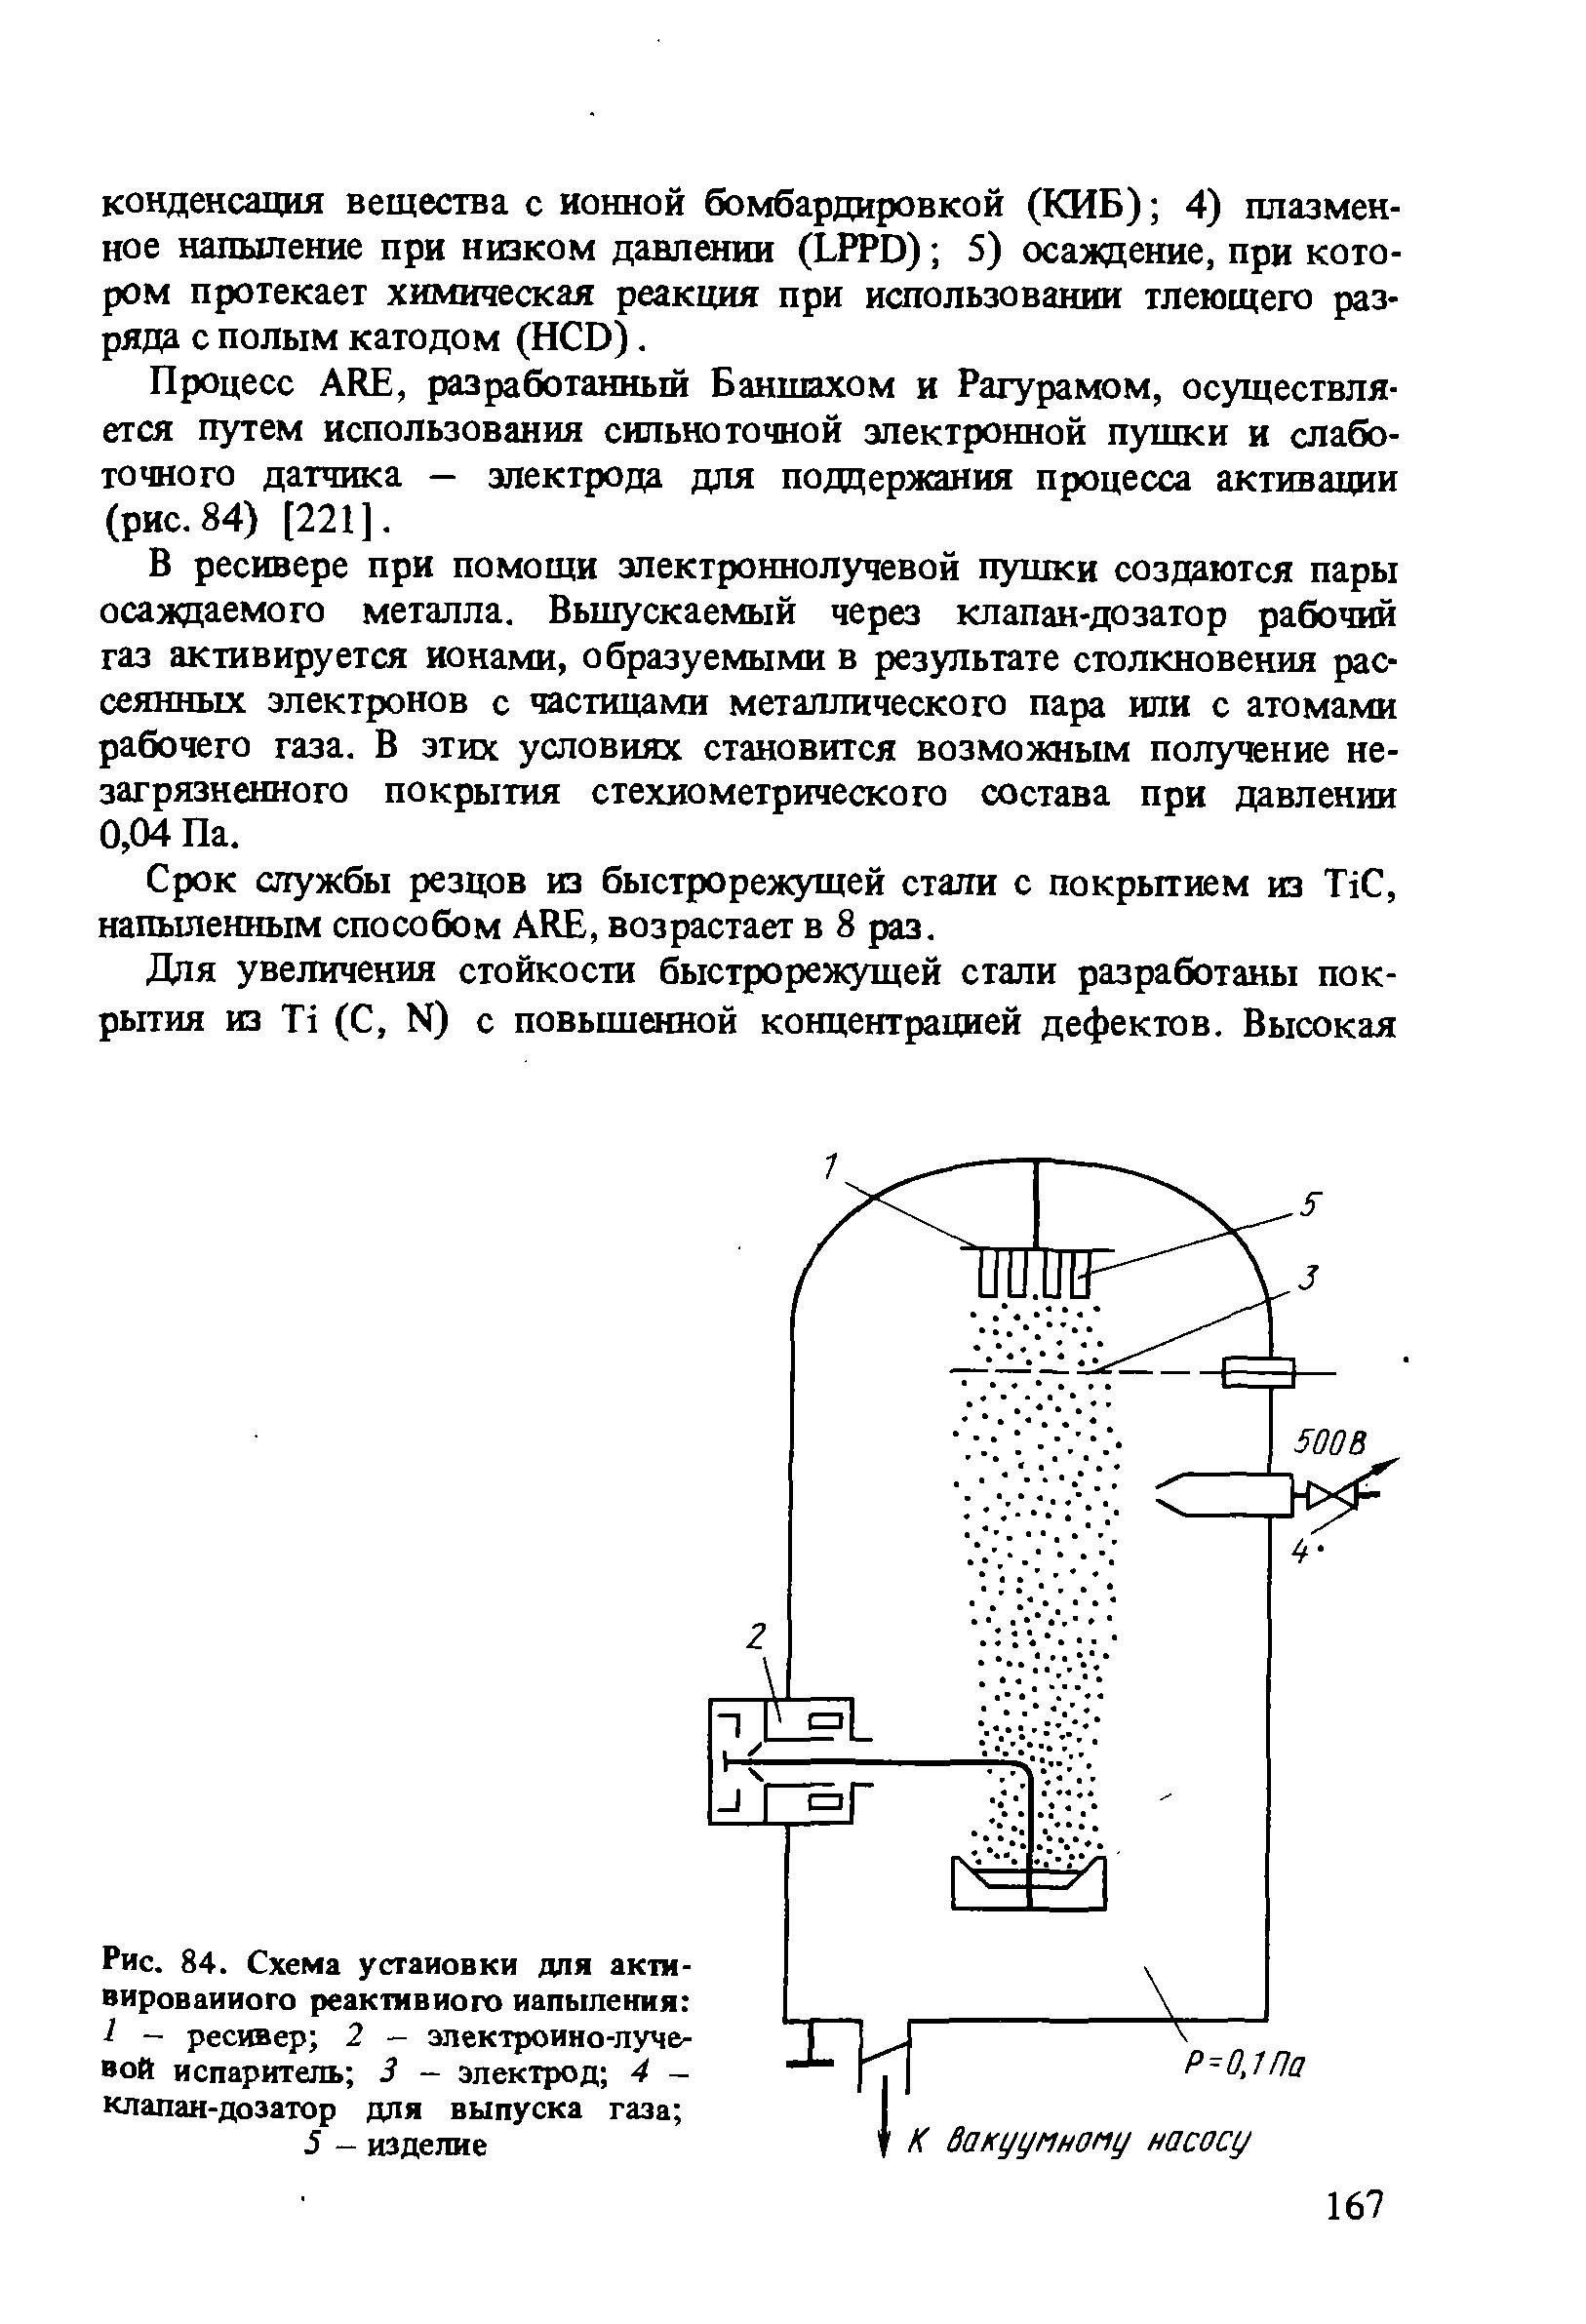 Рис. 84. Схема установки для актм-вироваииого реактивного напыления 1 - ресивер 2 - электронно-лучевой испаритель 3 - электрод 4 -клапан-дозатор для выпуска газа 
